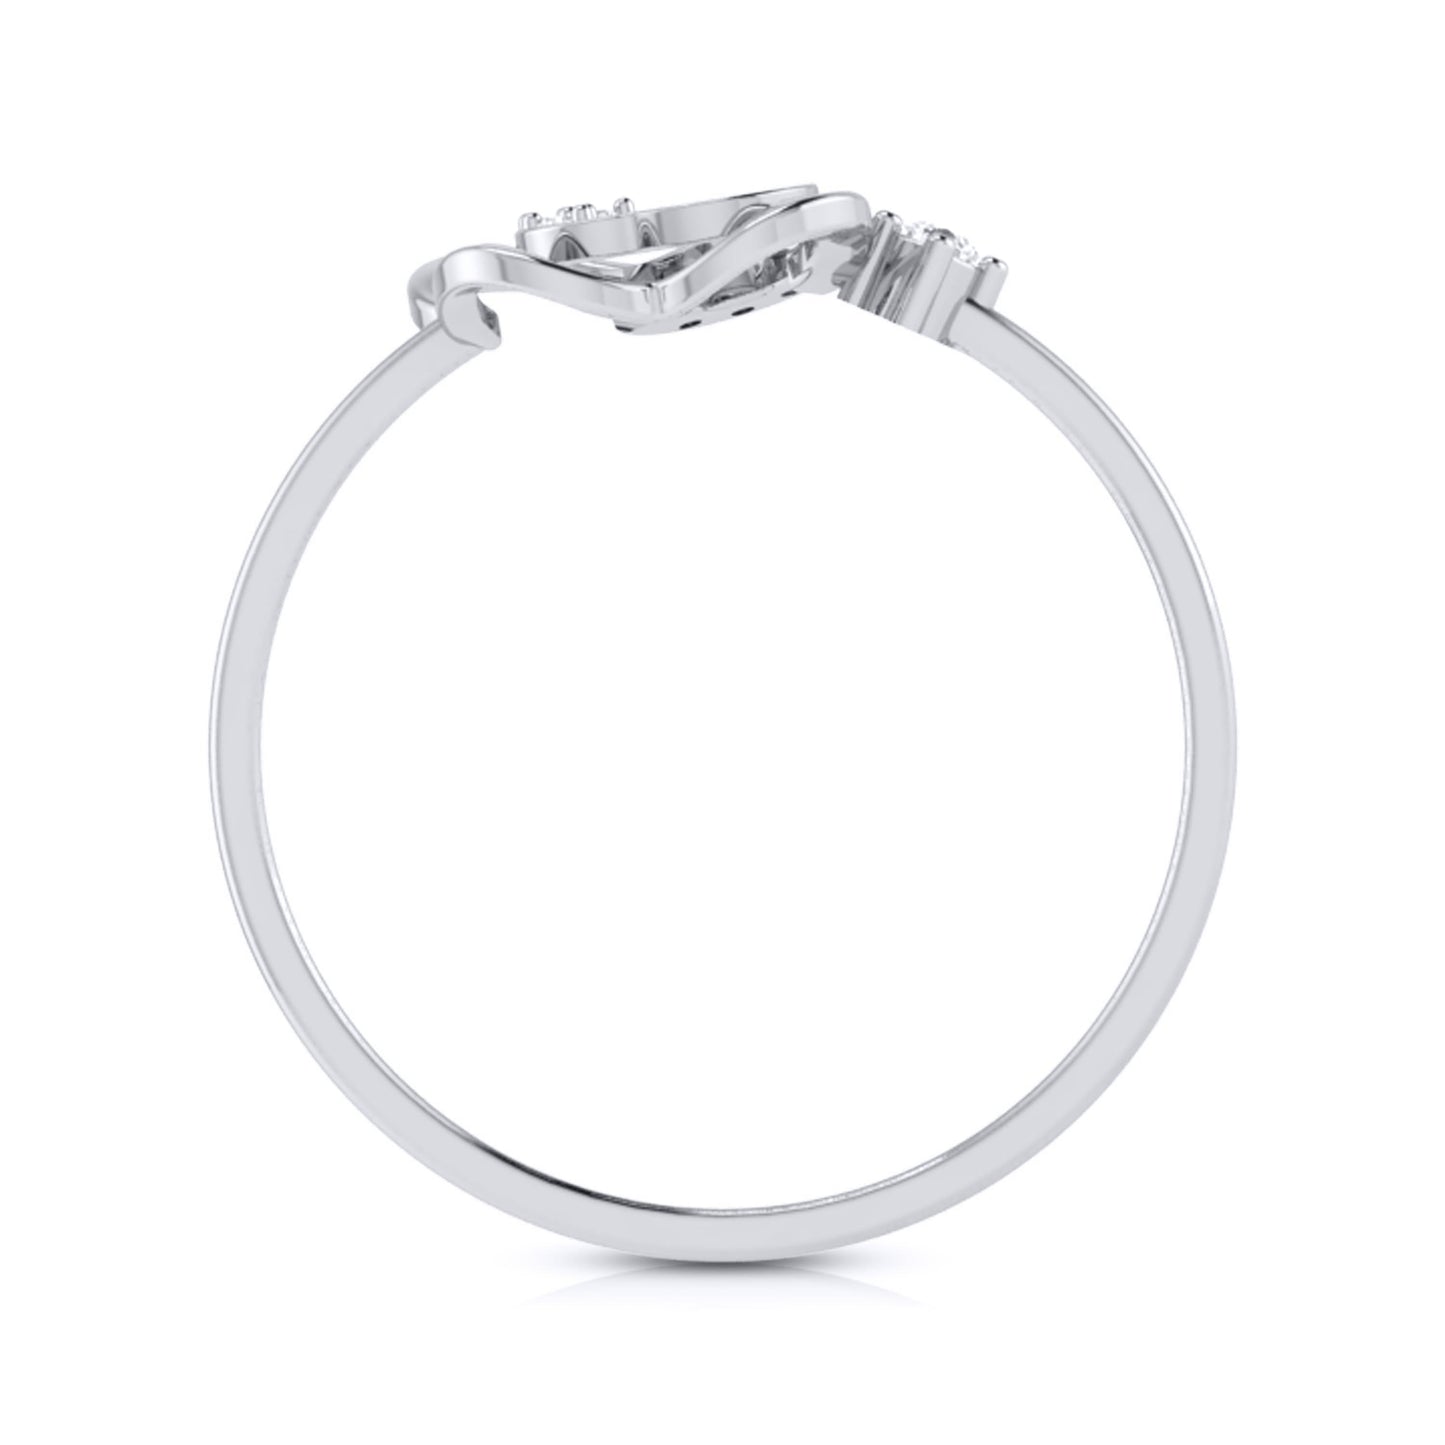 Trivial lab grown diamond ring simple round ring design Fiona Diamonds